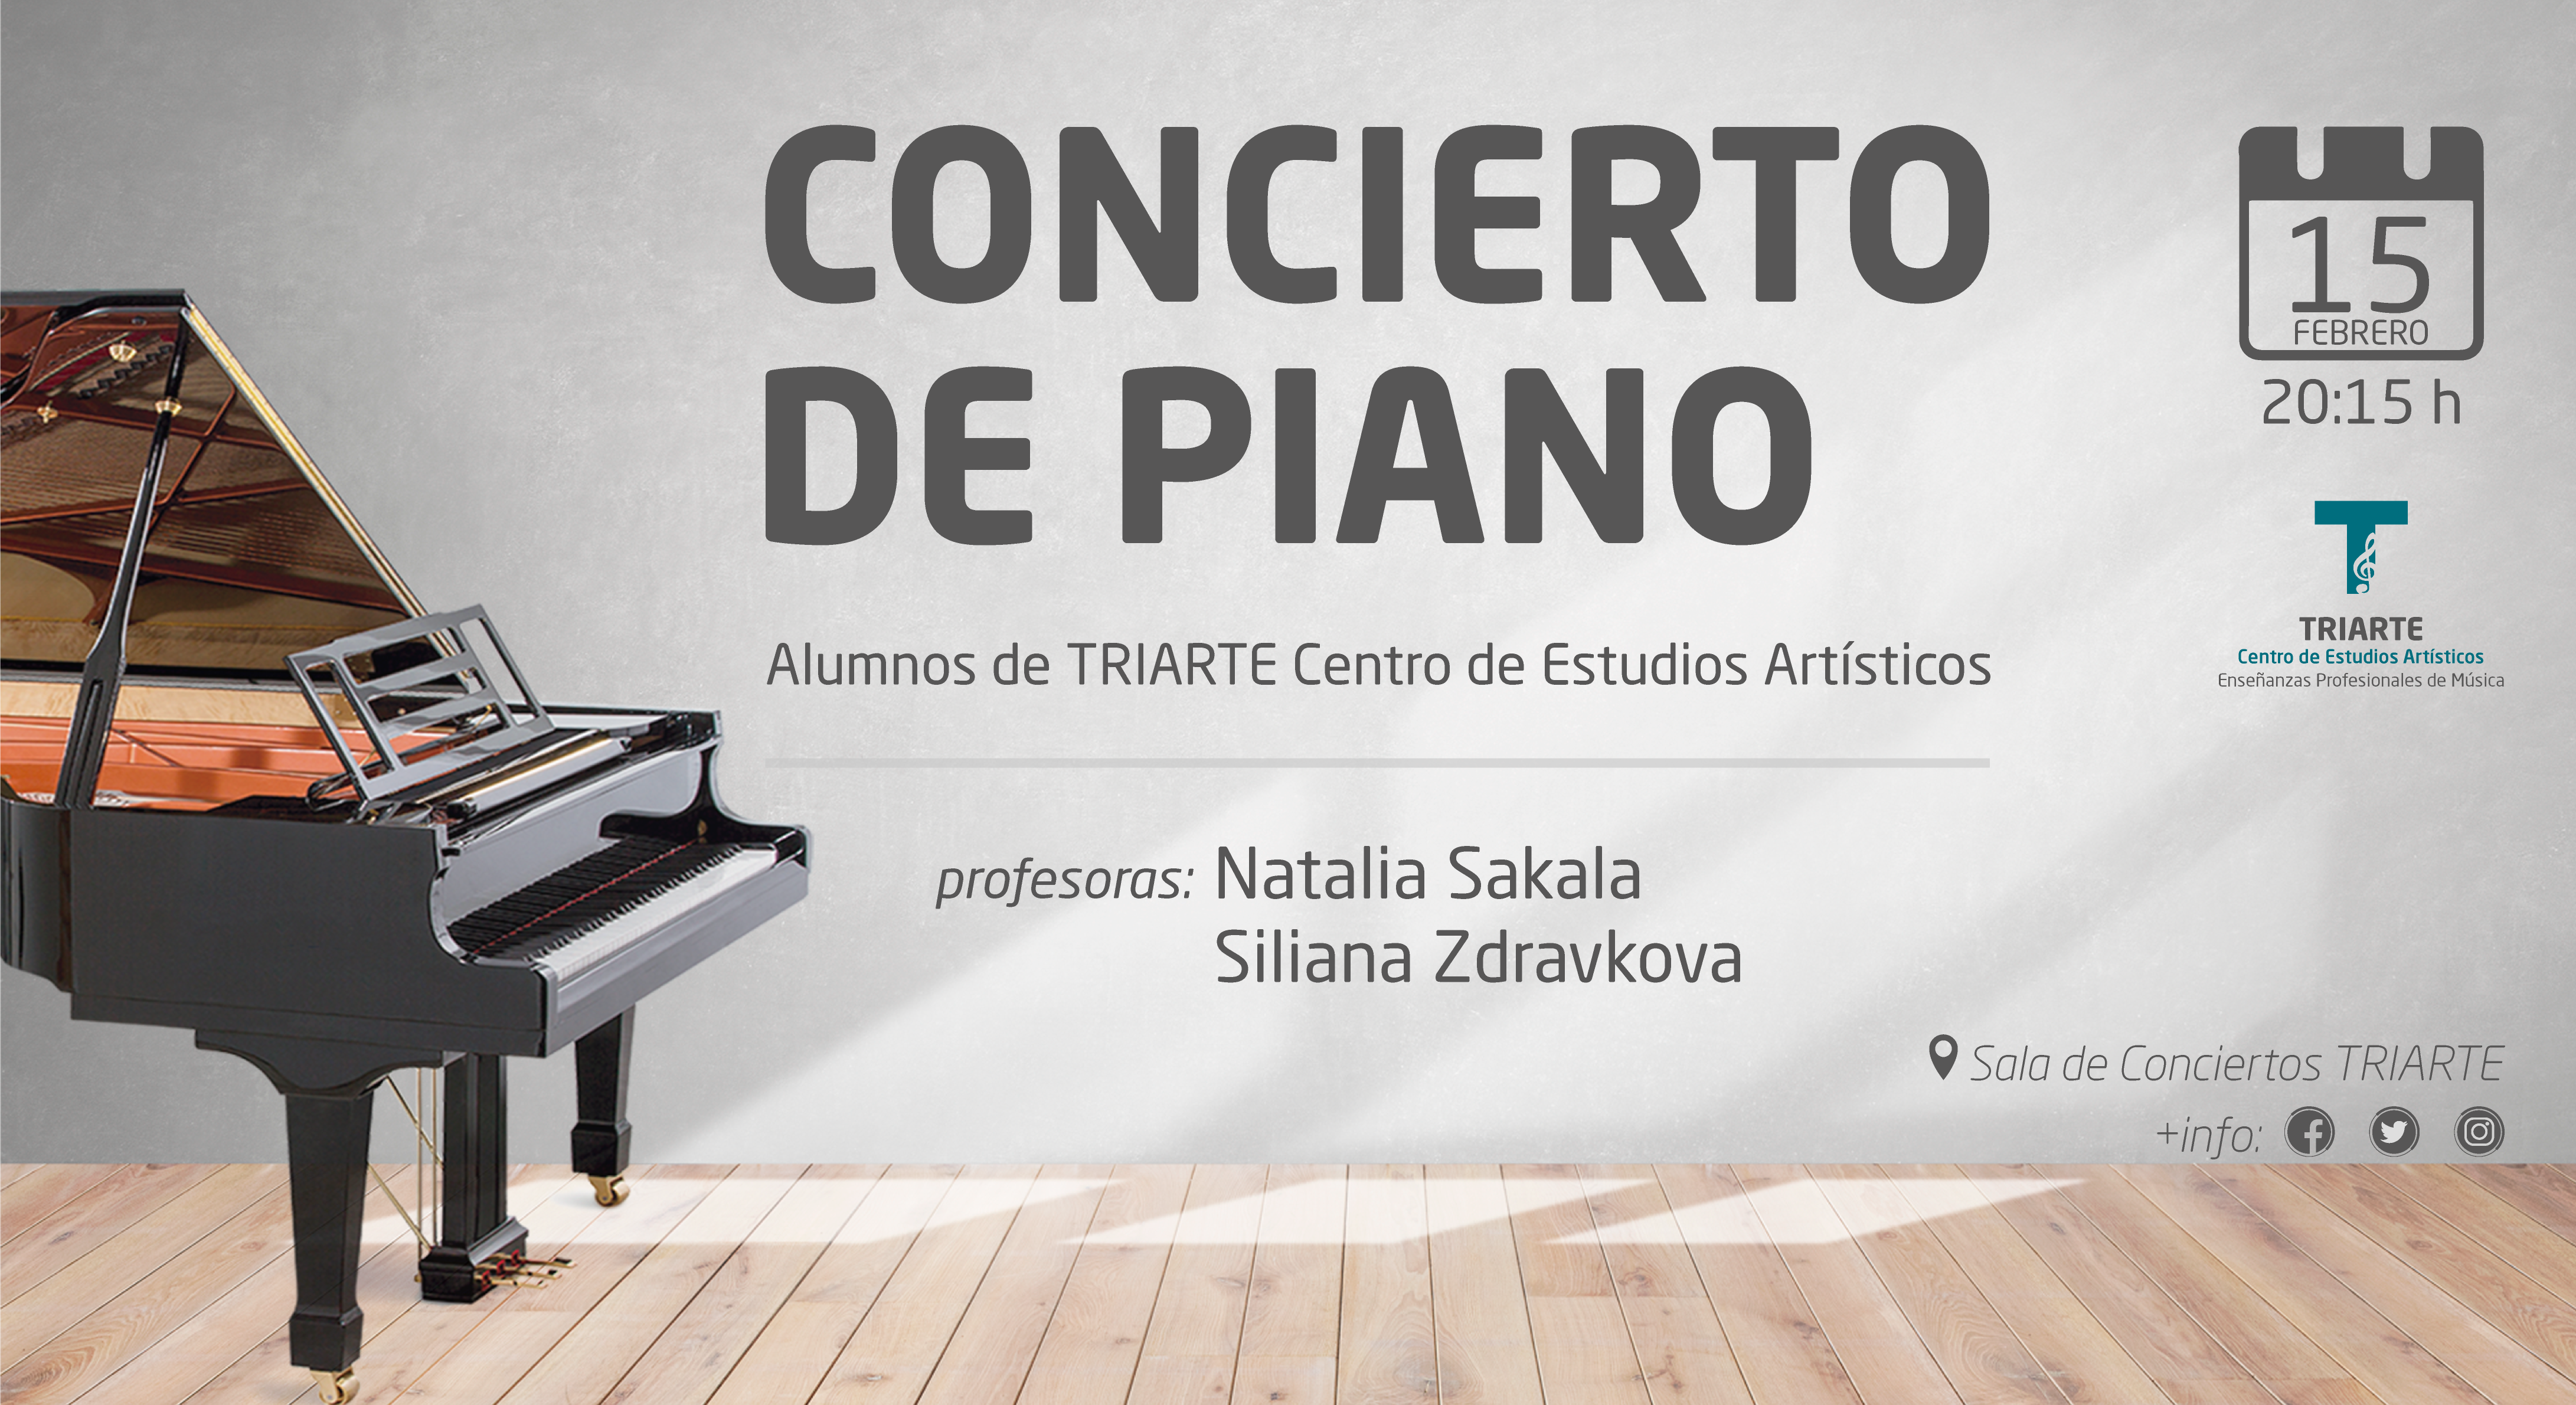 Concierto de Piano. Alumnos de TRIARTE Centro de Estudios Artísticos.